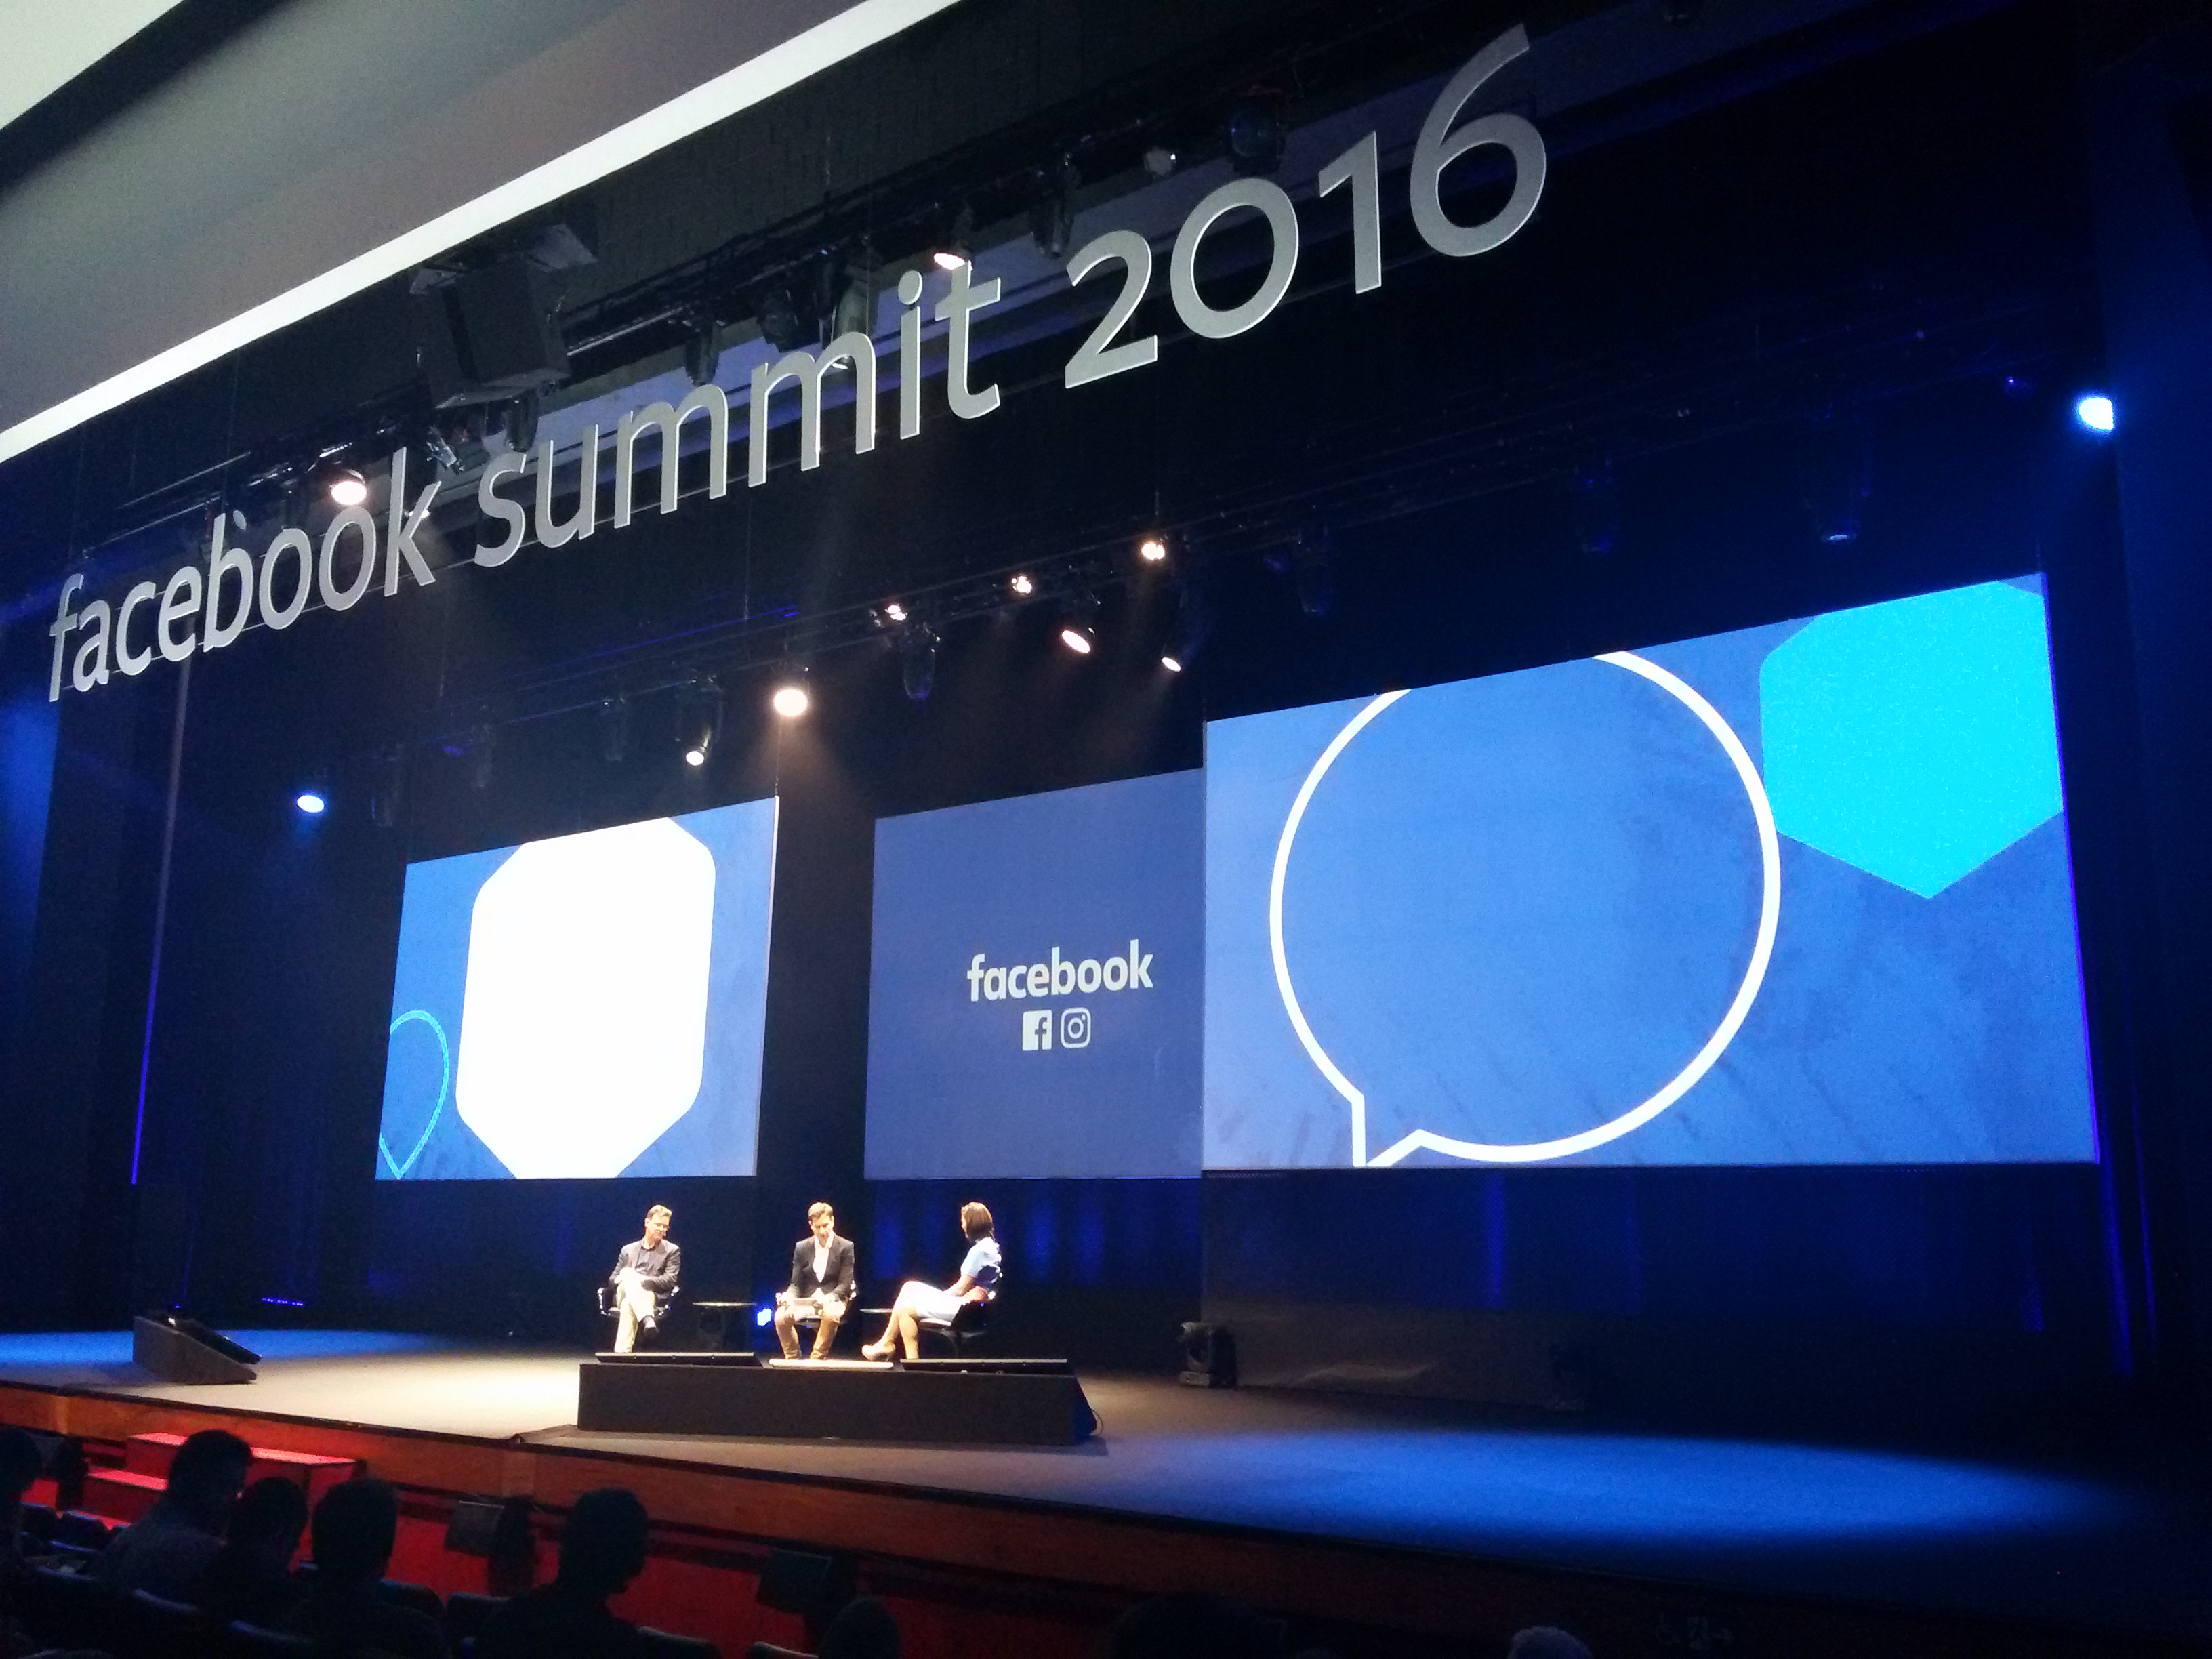 Três pessoas sentadas no palco do evento. Na parte superior do palco, há um letreiro com as palavras Facebook Summit 2016. O palco também tem três telões um ao lado do outro. 